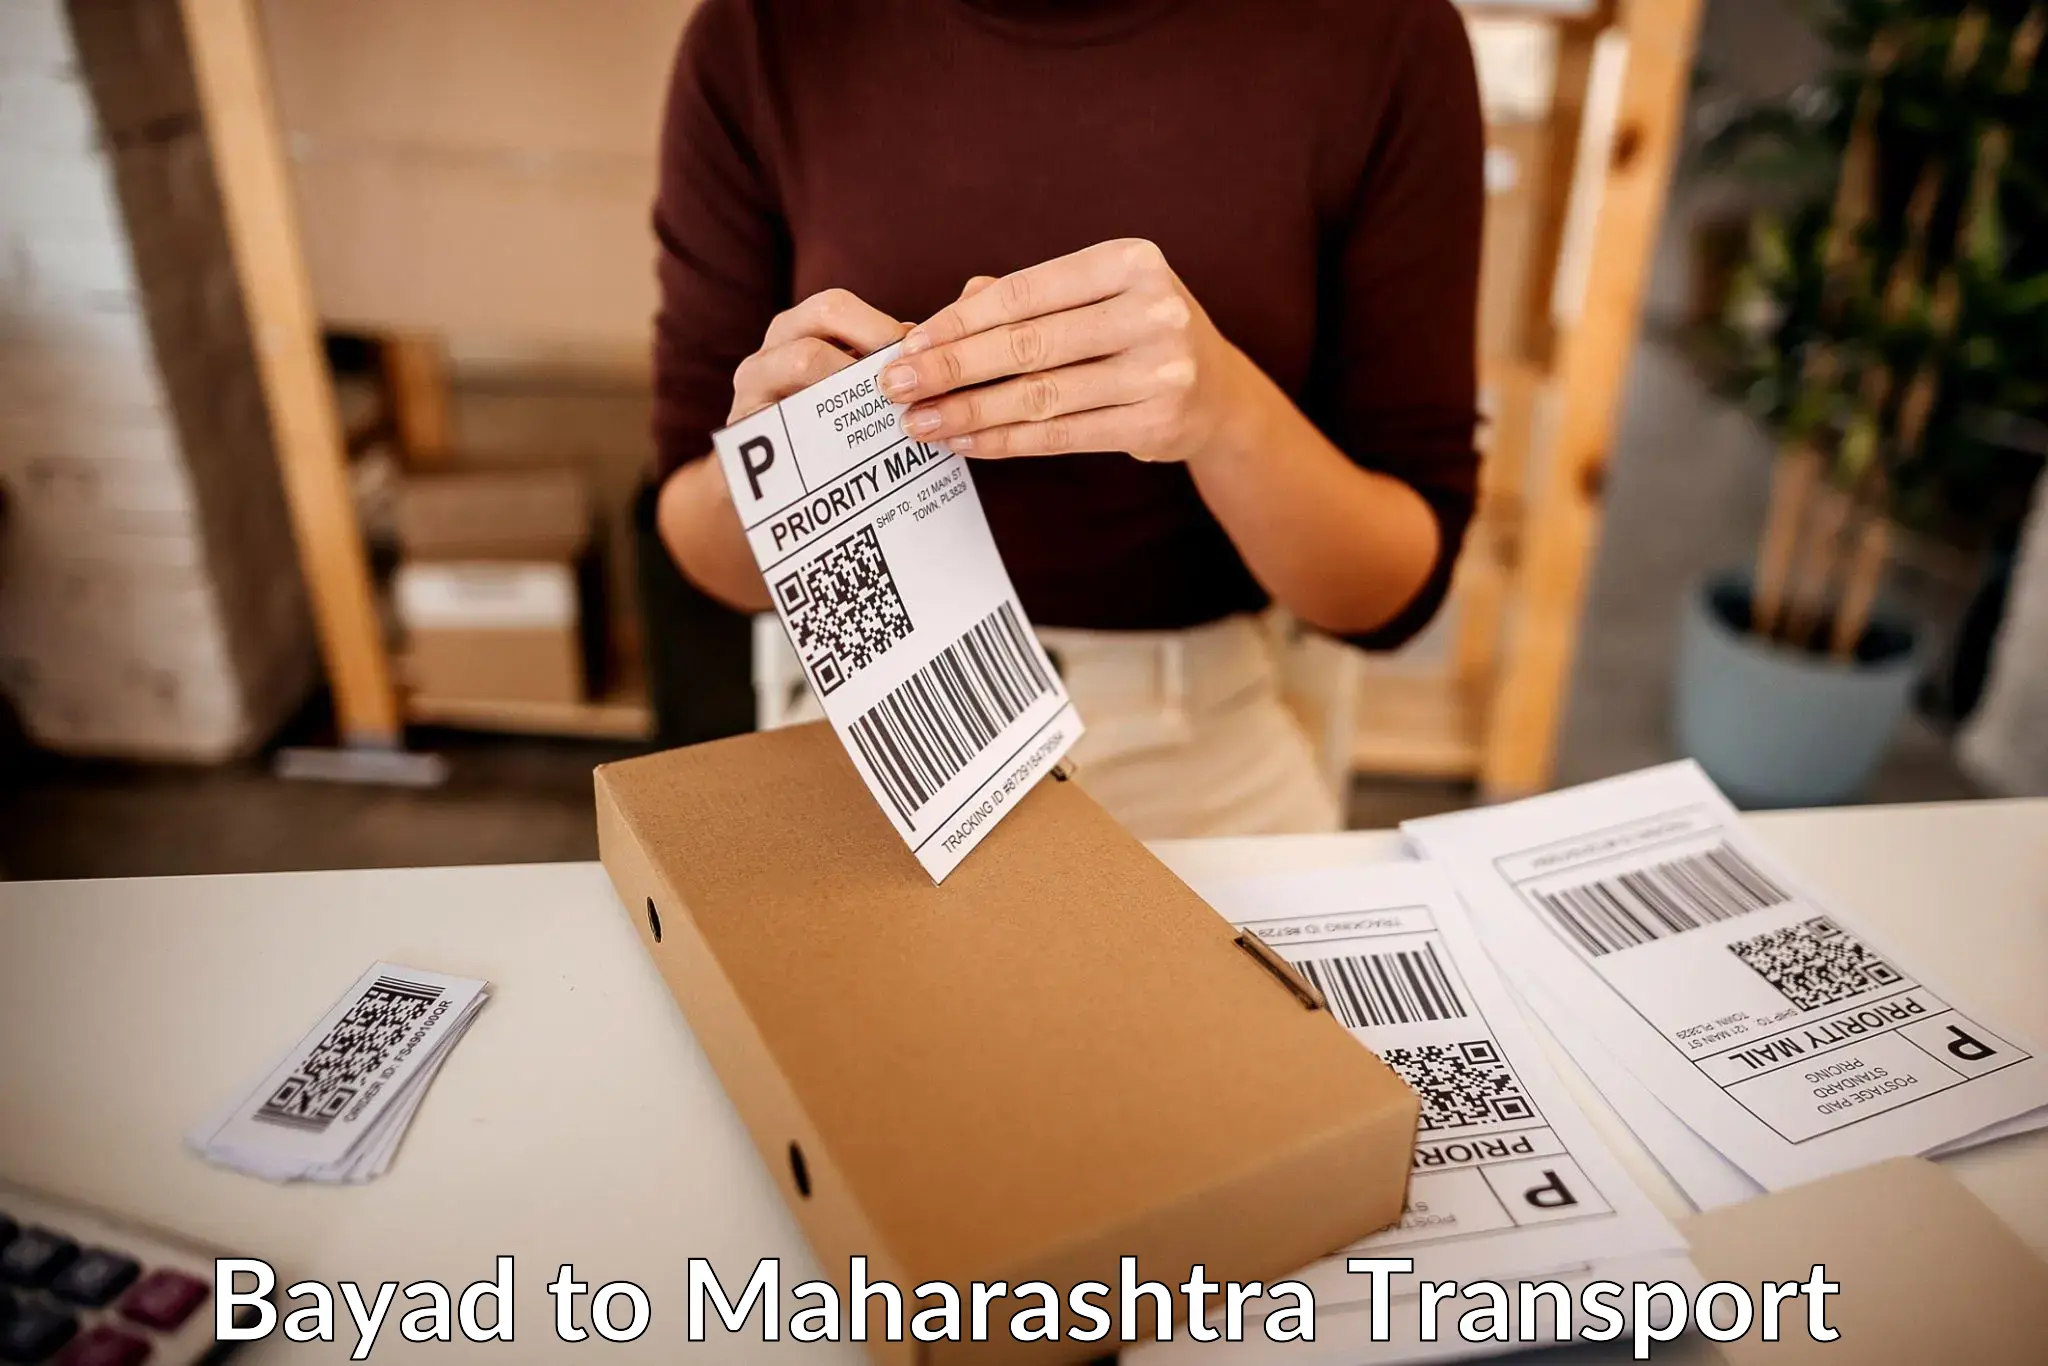 Daily parcel service transport Bayad to Maharashtra